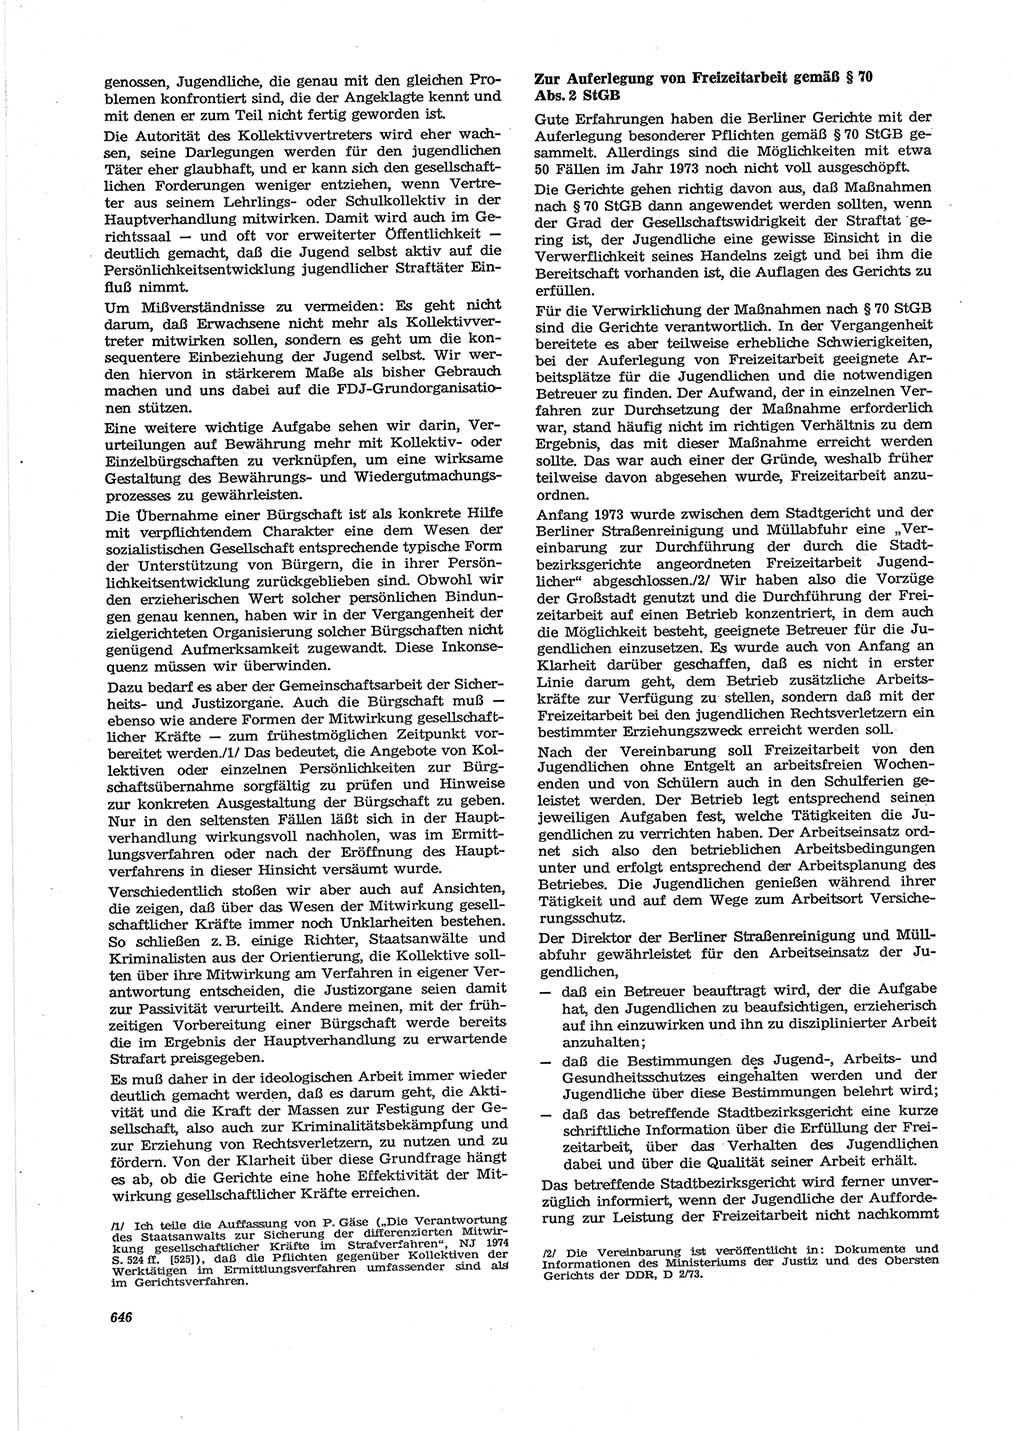 Neue Justiz (NJ), Zeitschrift für Recht und Rechtswissenschaft [Deutsche Demokratische Republik (DDR)], 28. Jahrgang 1974, Seite 646 (NJ DDR 1974, S. 646)